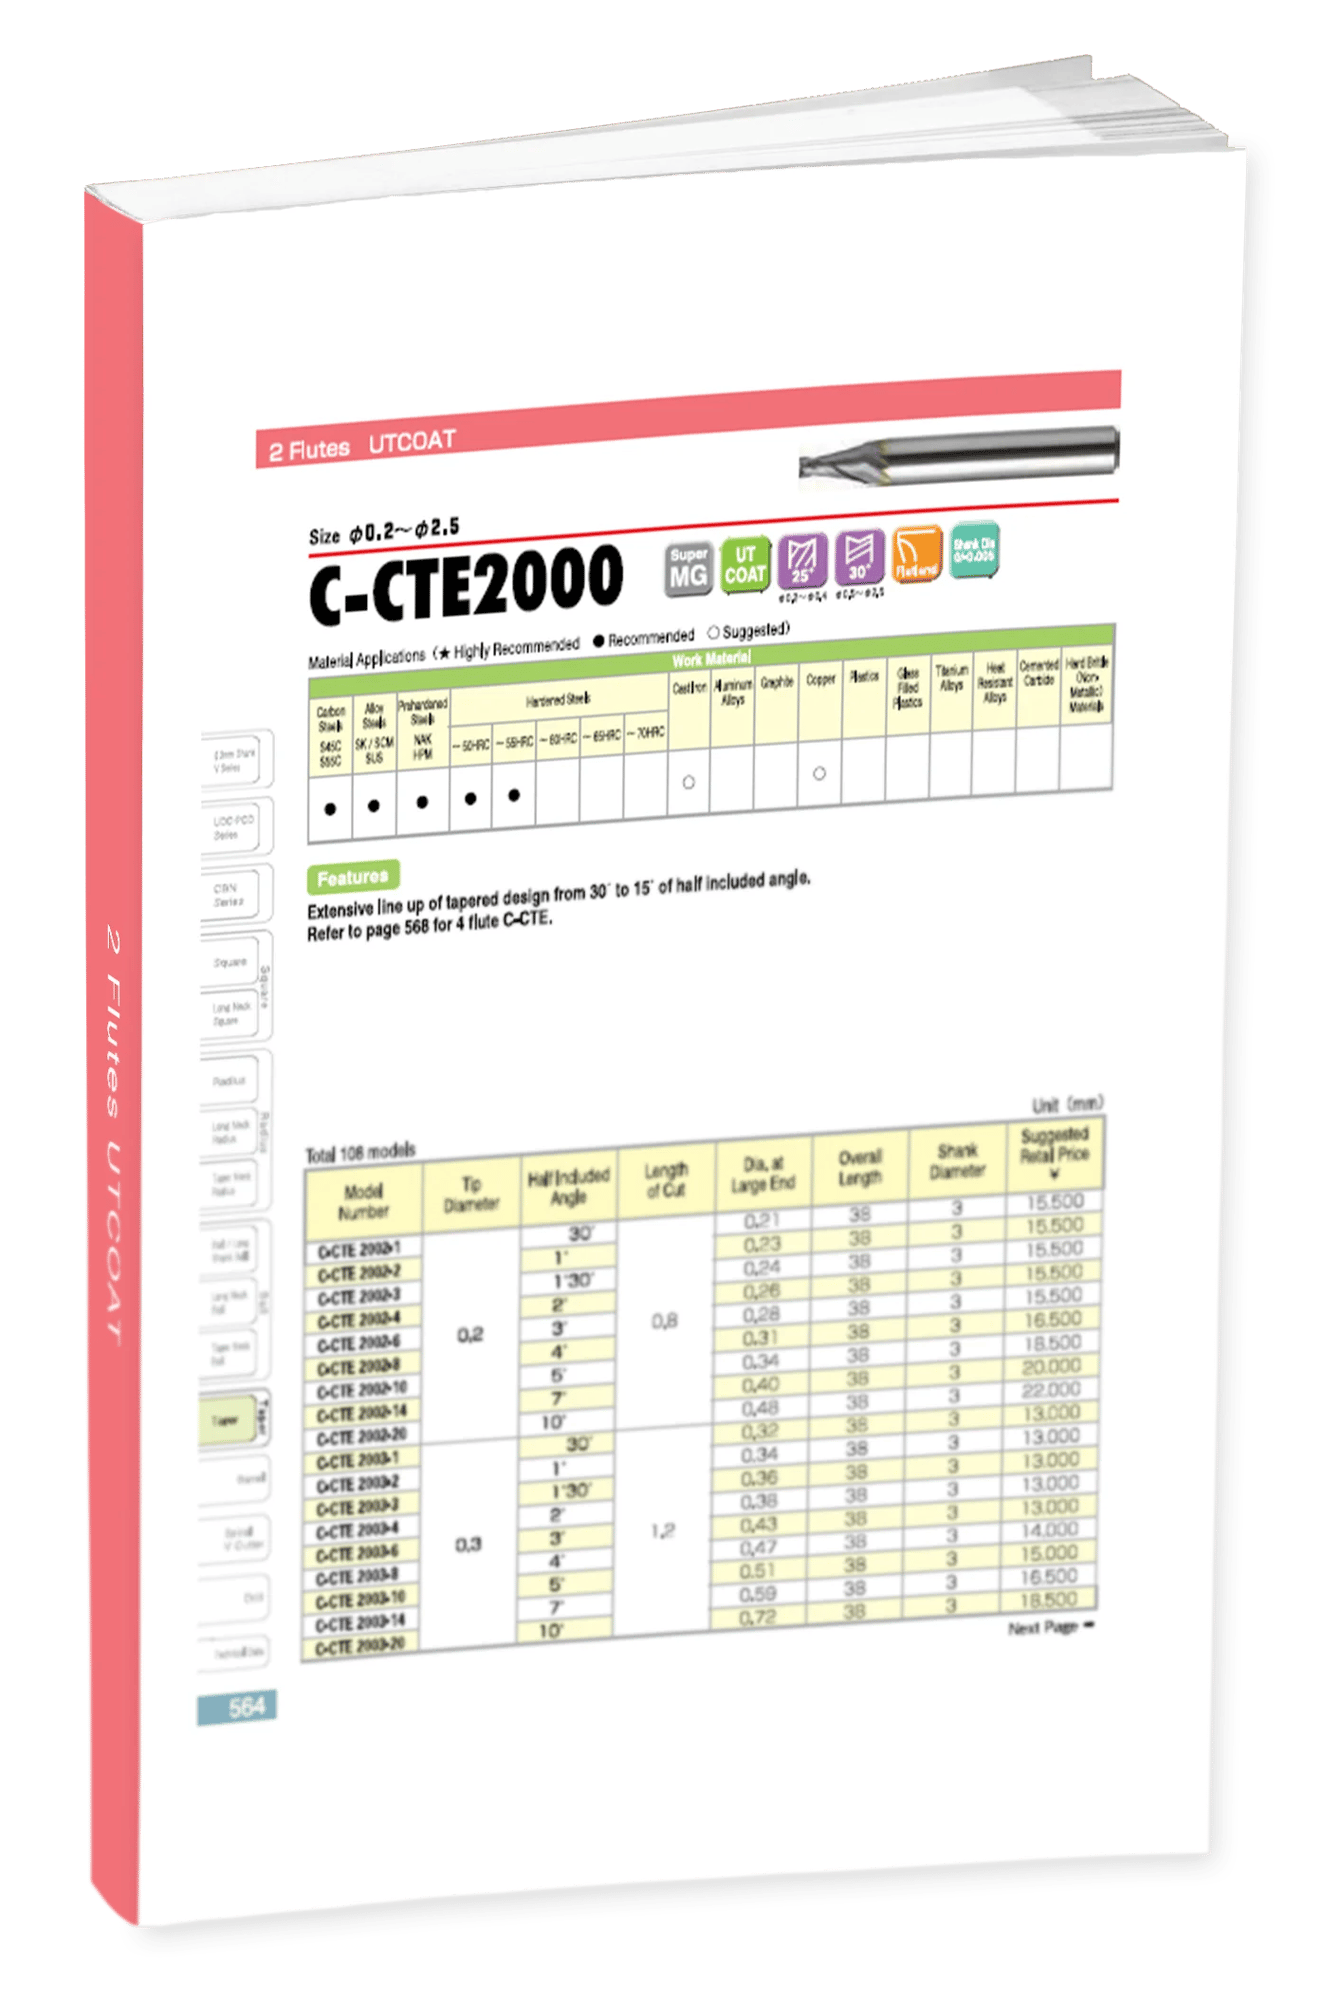 C-CTE2000 2 Flute Vol 21